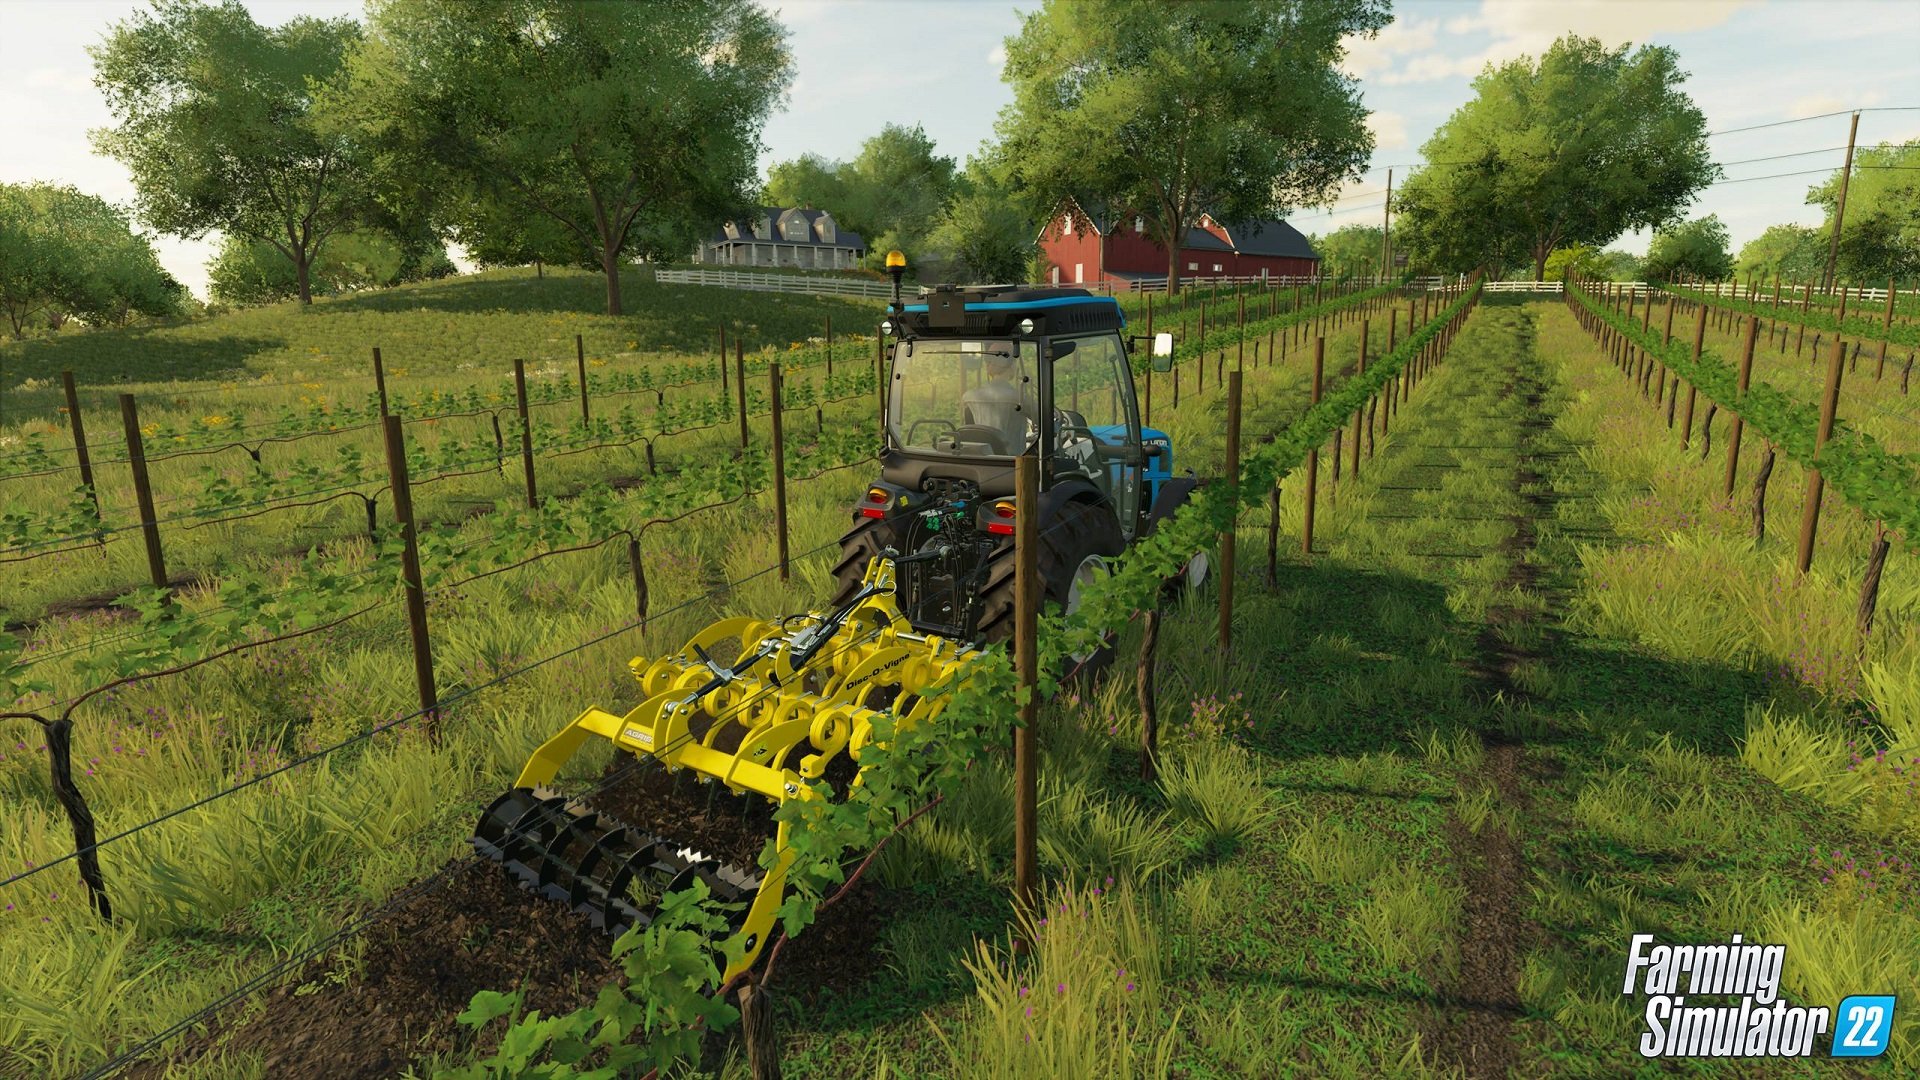 Farming Simulator 22 bate 1.5 milhão de cópias vendidas